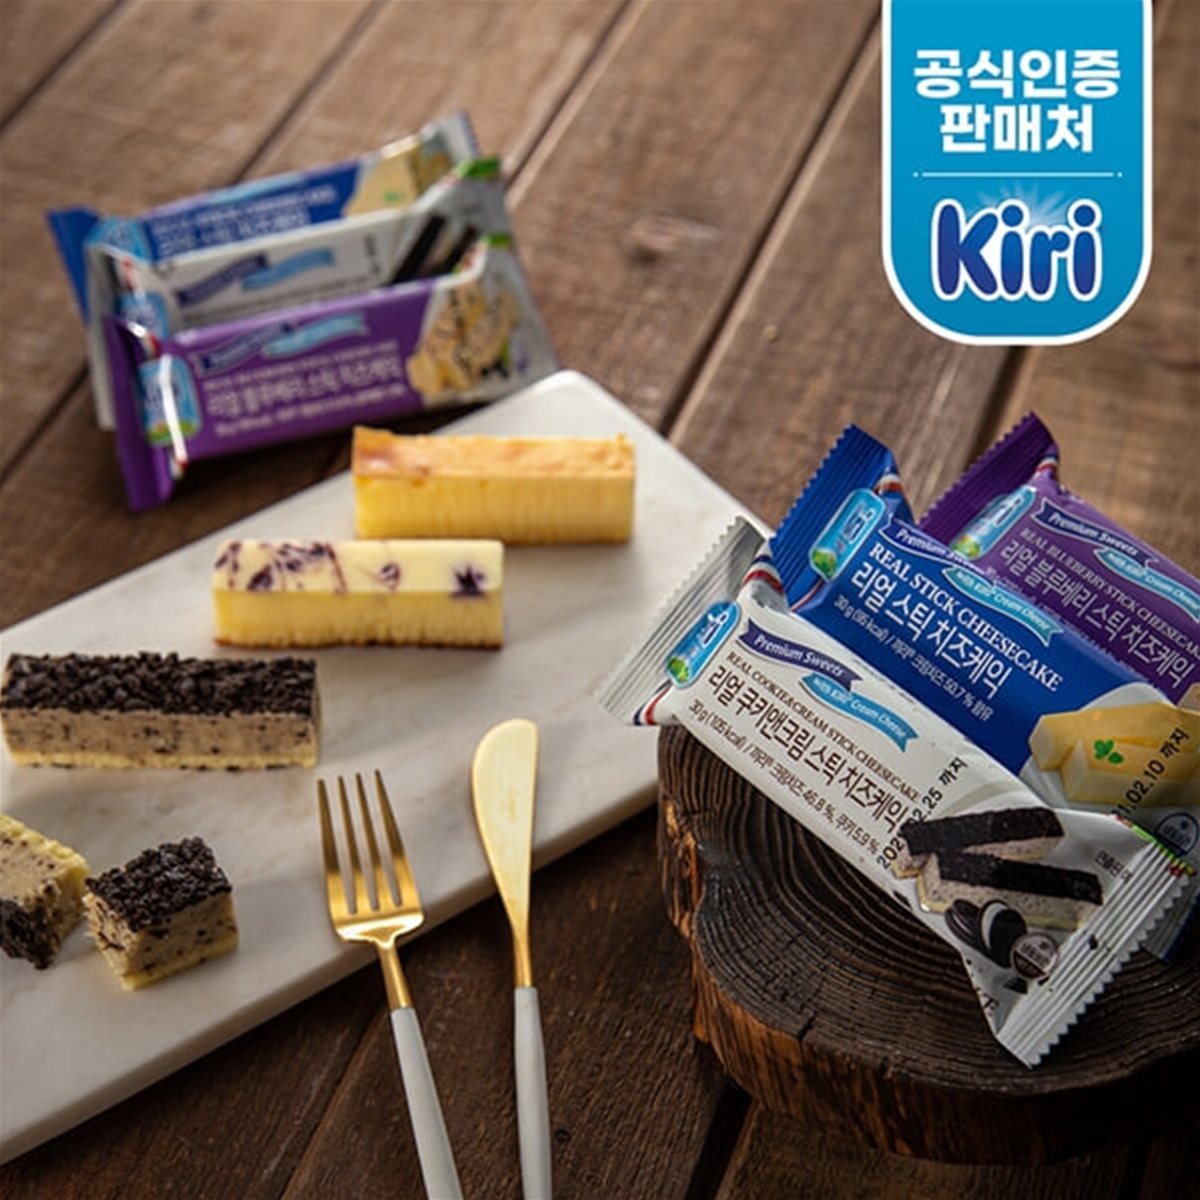 [끼리] 리얼 스틱 치즈케익 30g 블루베리 6개(Blueberry_cake_6)